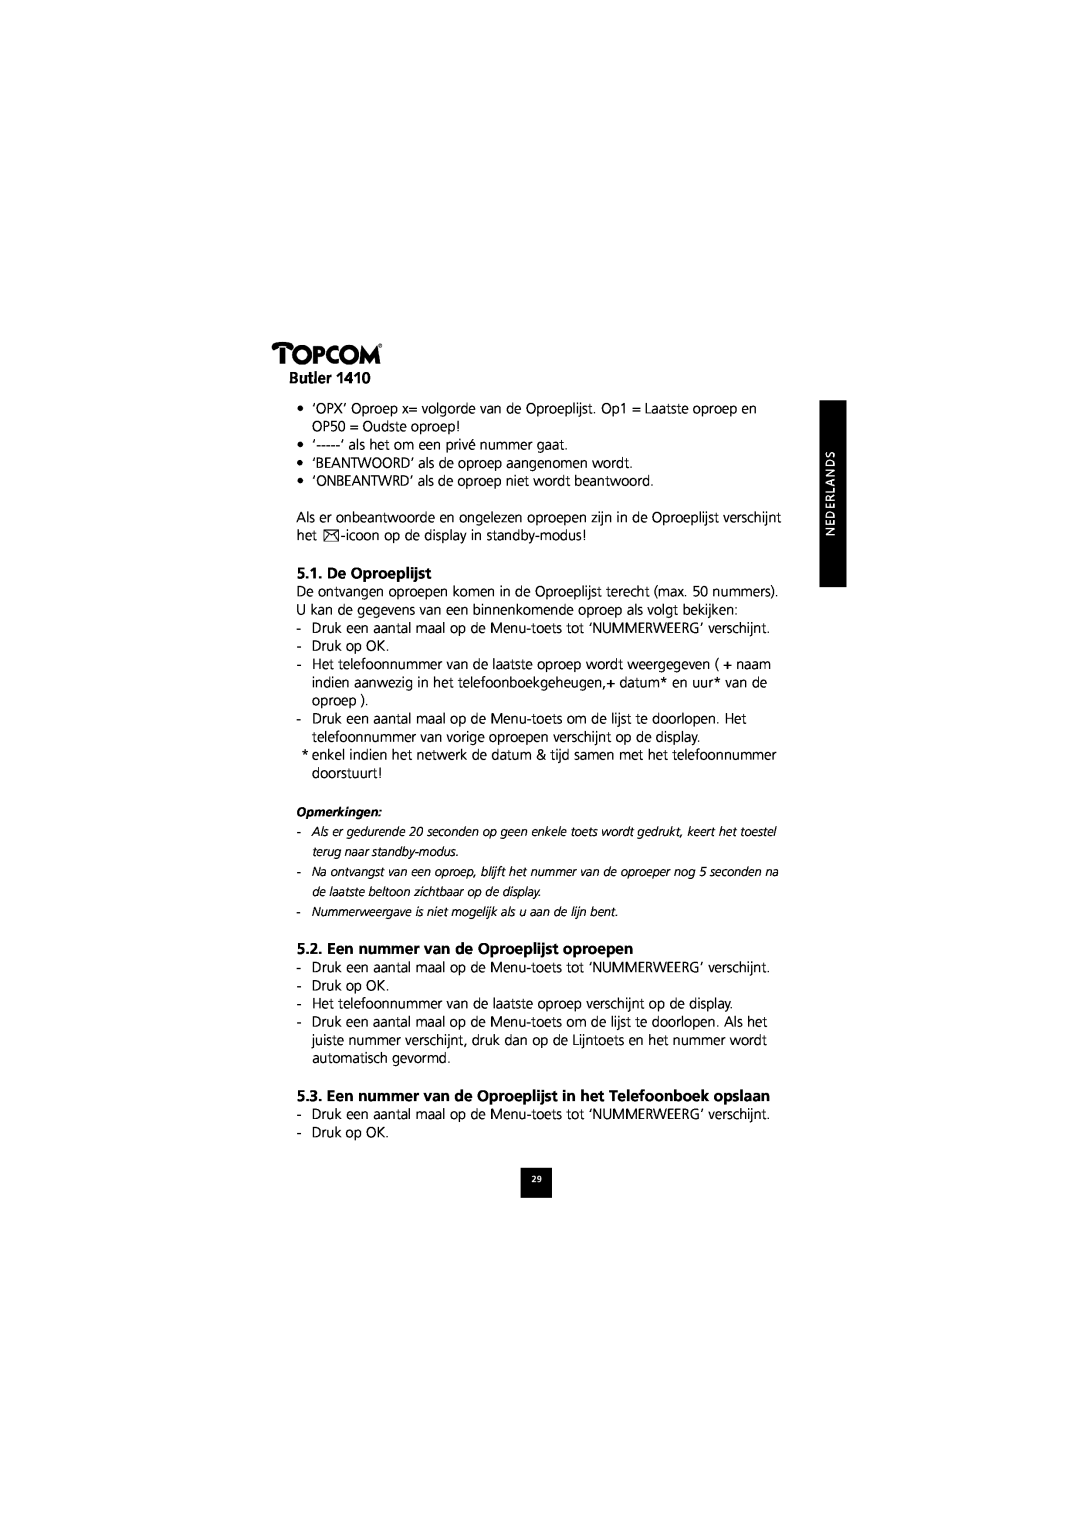 Topcom 1410 manual De Oproeplijst, Een nummer van de Oproeplijst oproepen, Butler 